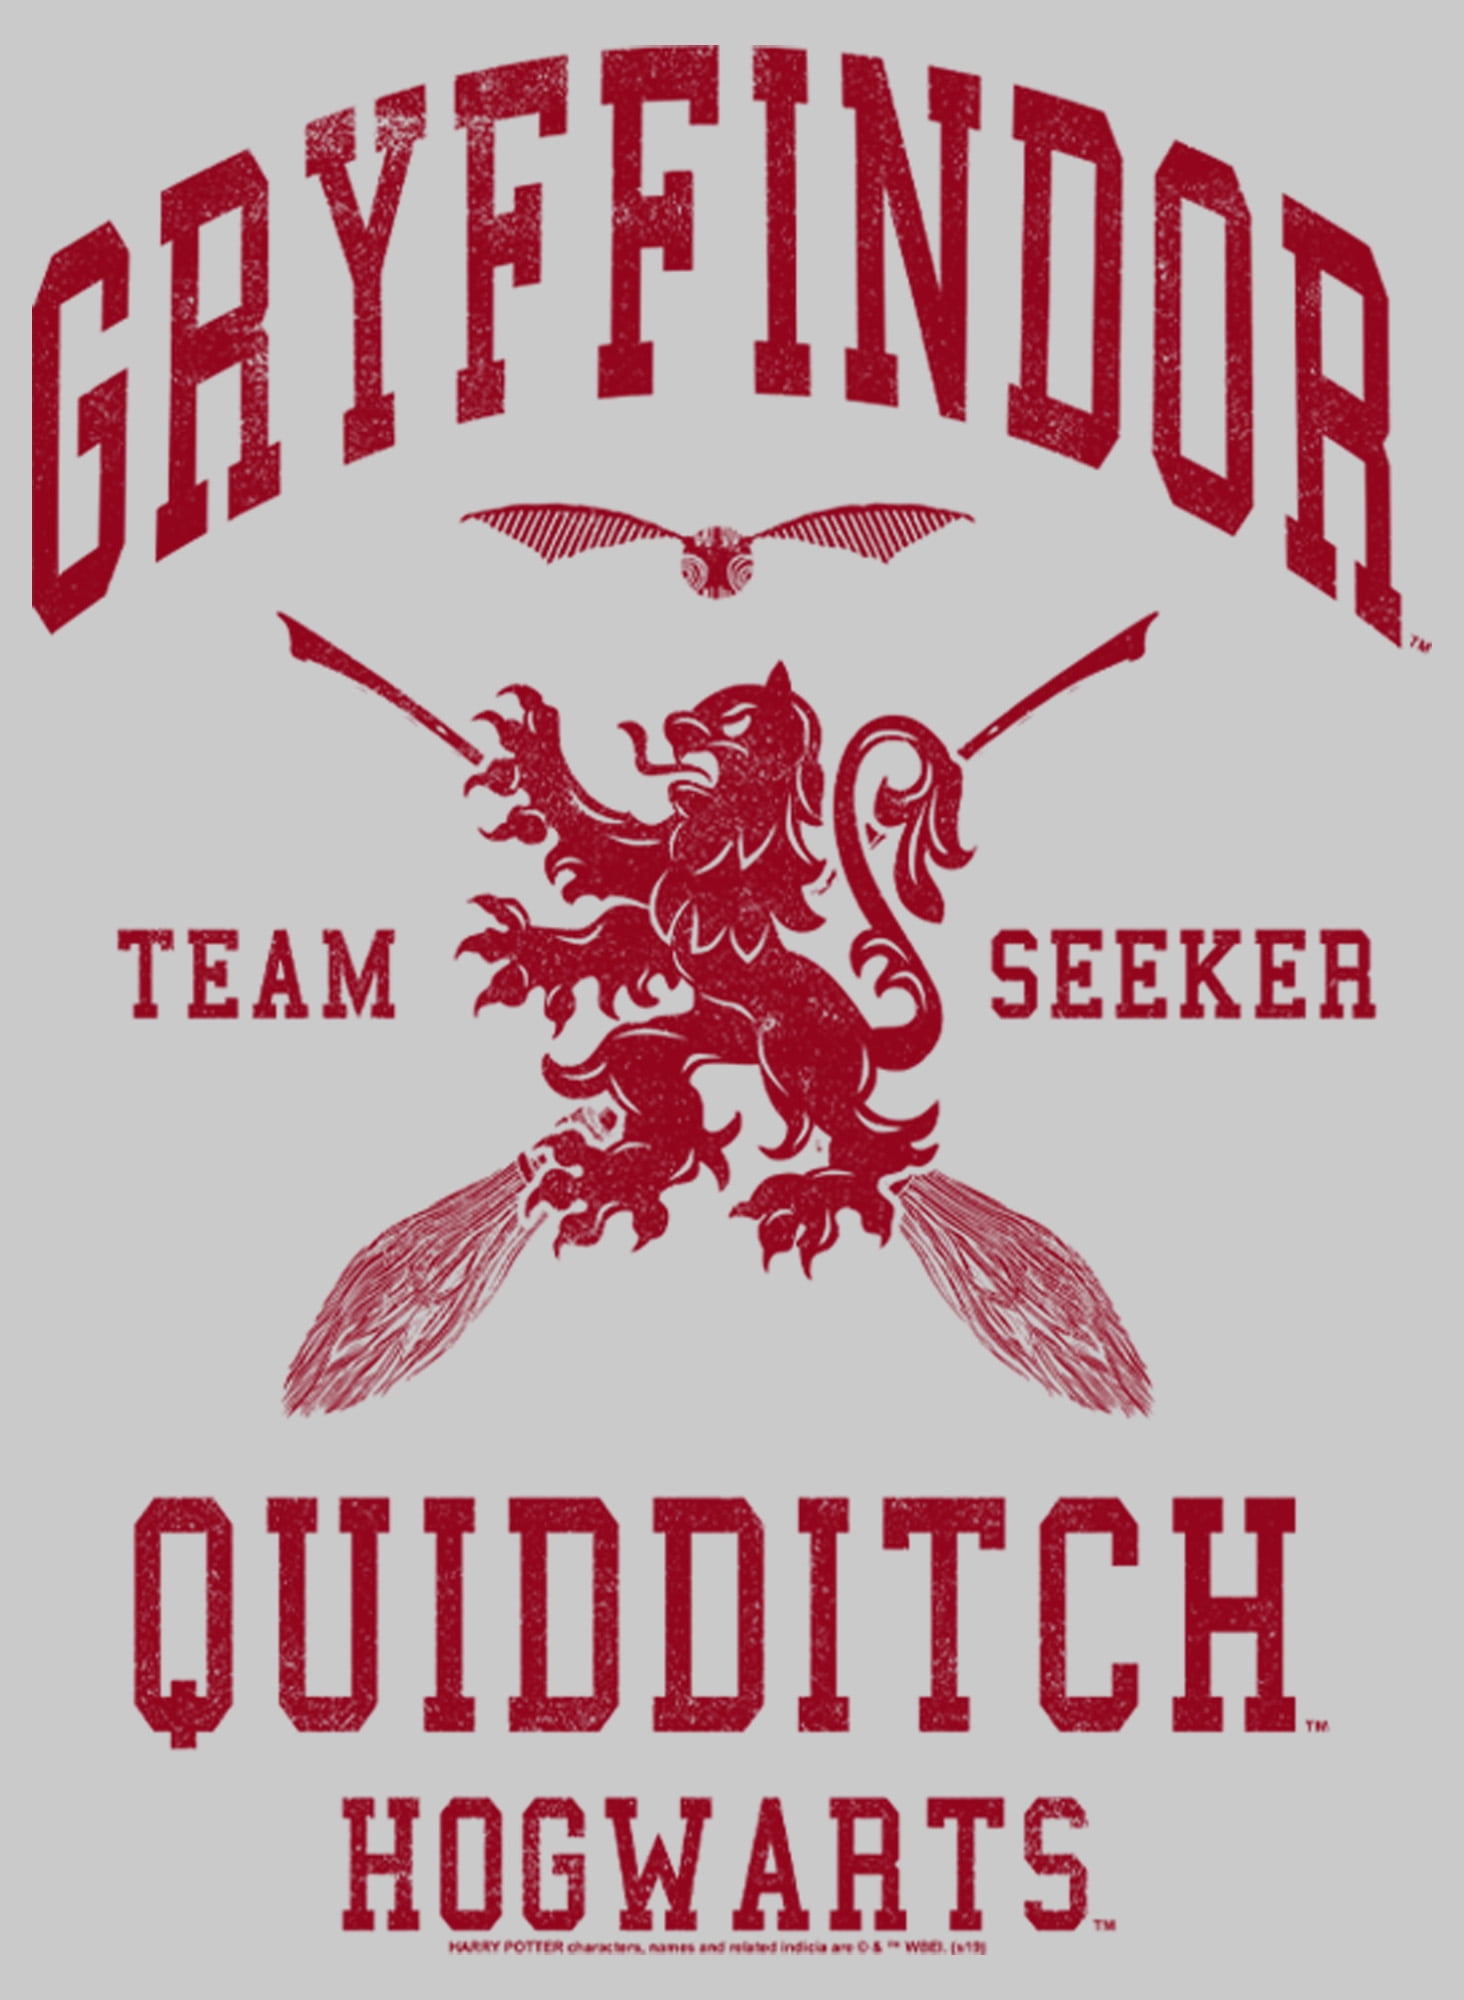 Men's Harry Potter Gryffindor Quidditch Team Seeker Sweatshirt Athletic  Heather 2X Large